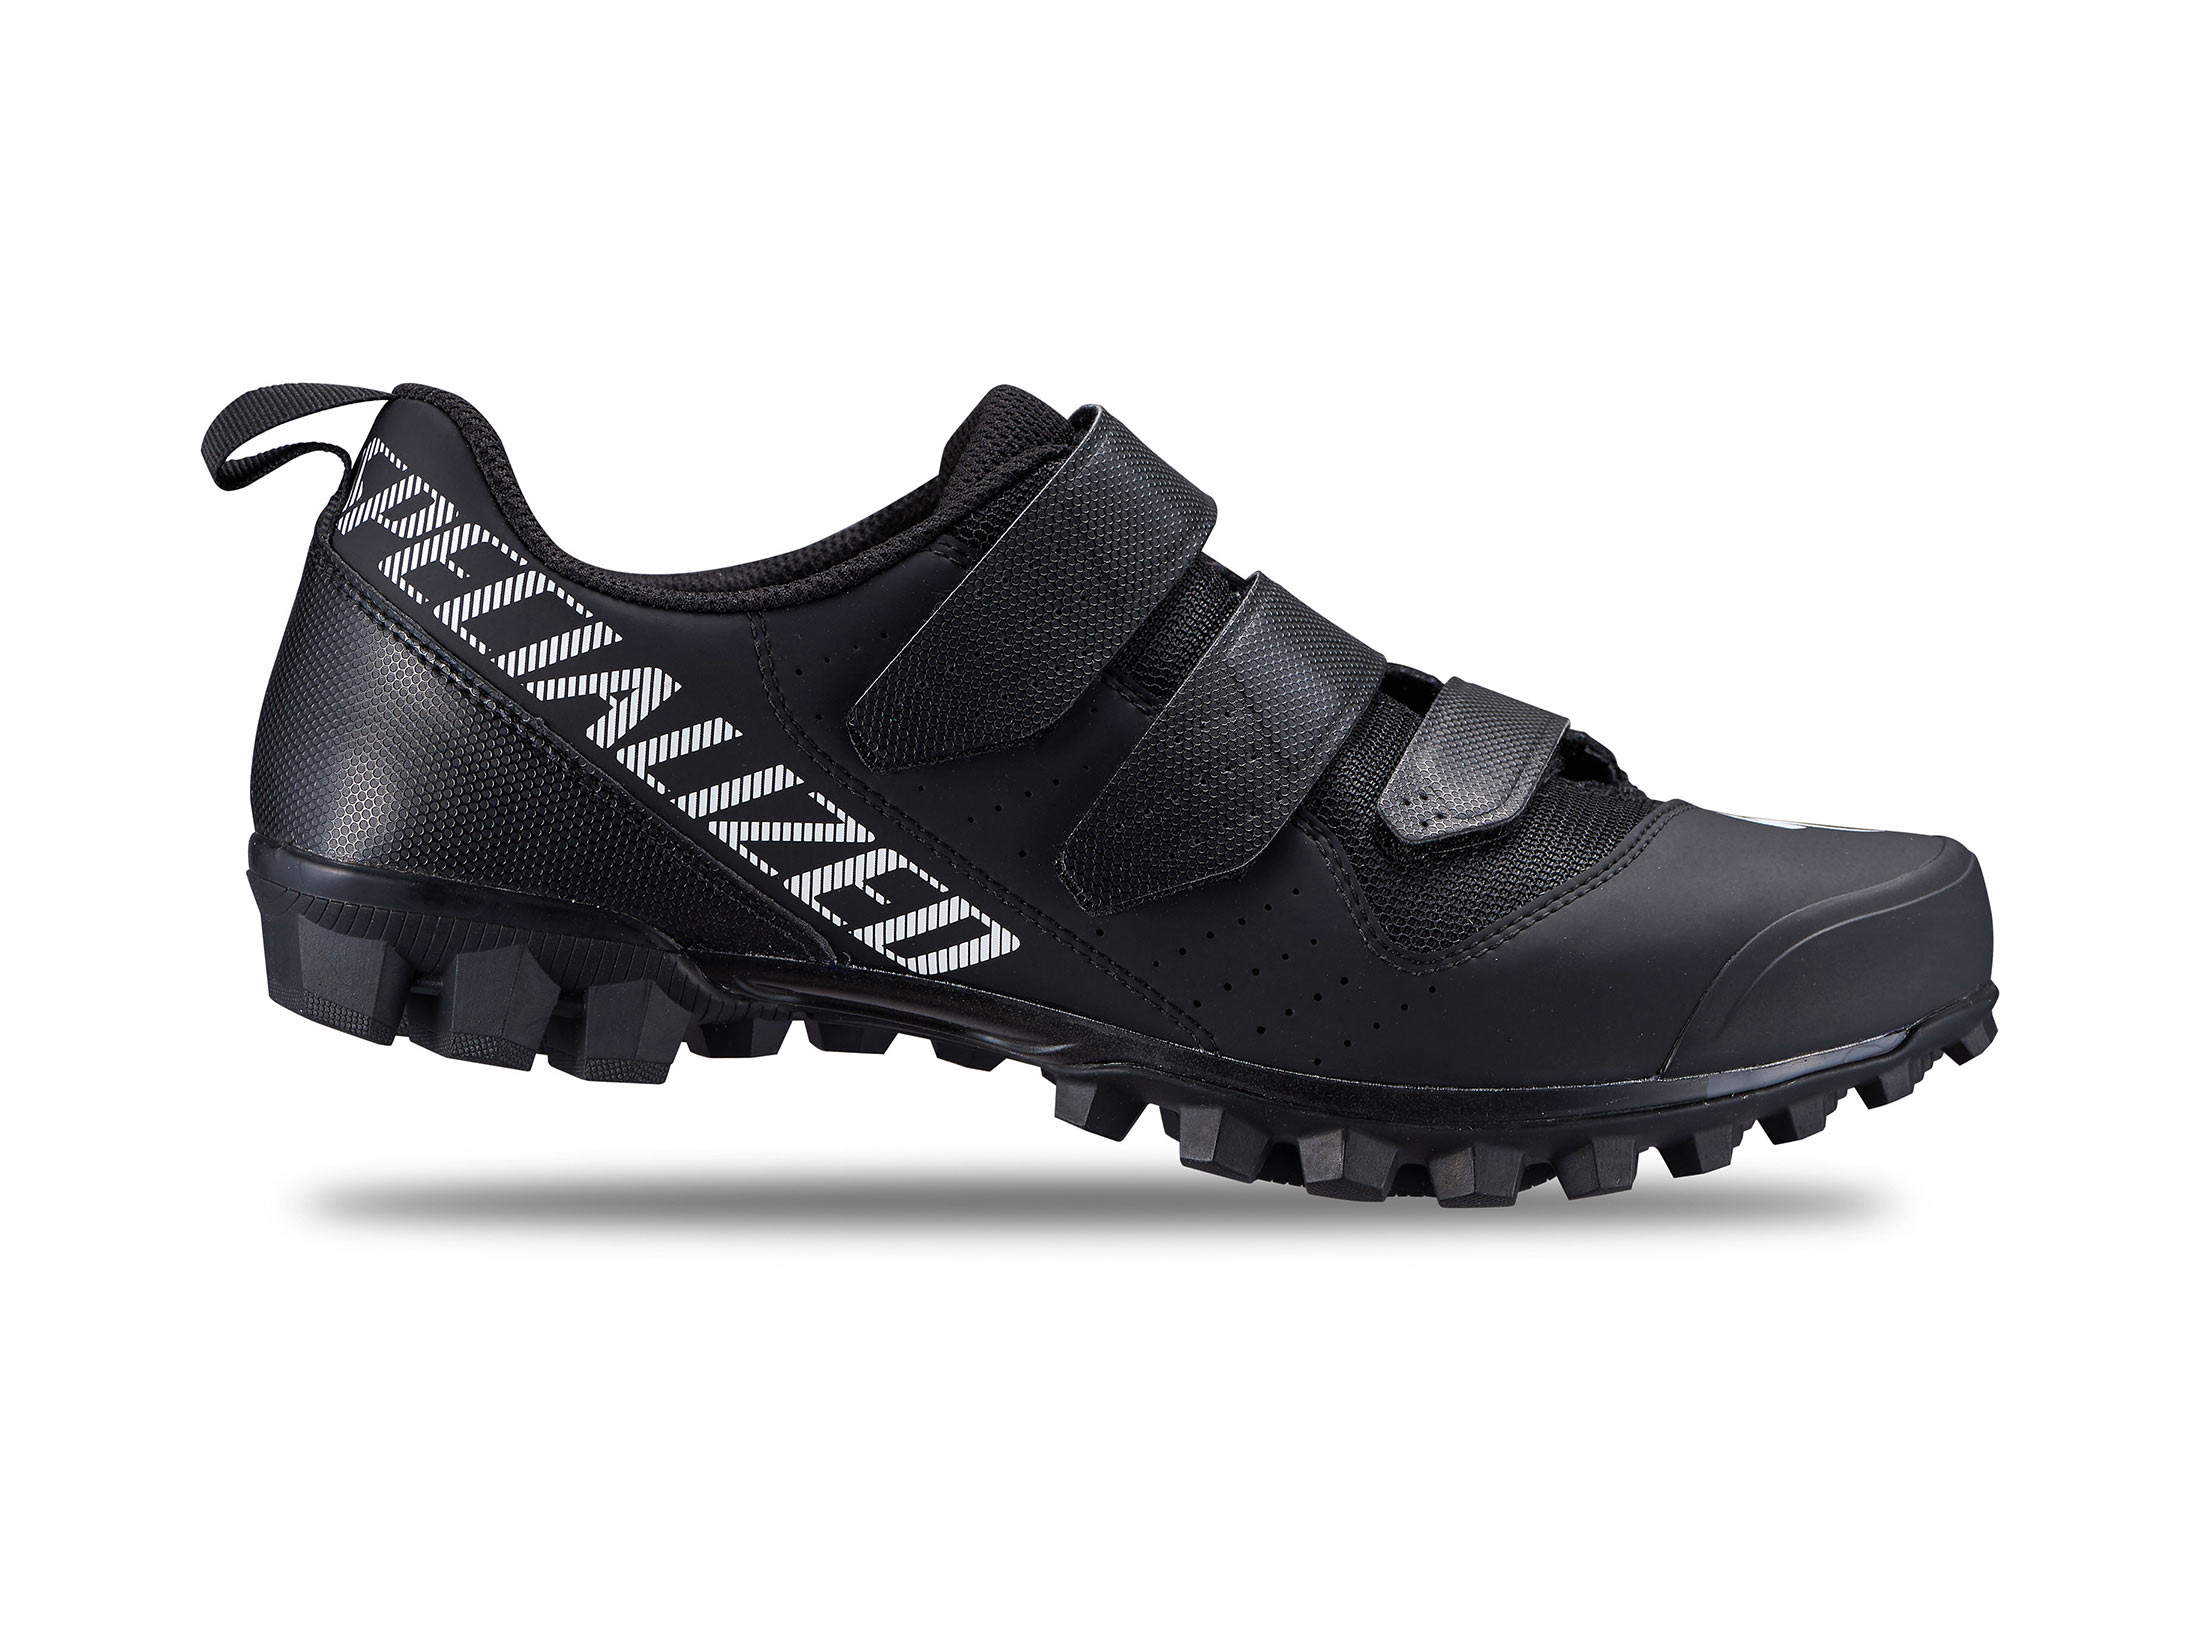 Παπούτσια Specialized Recon 1.0 Mountain Bike - Black